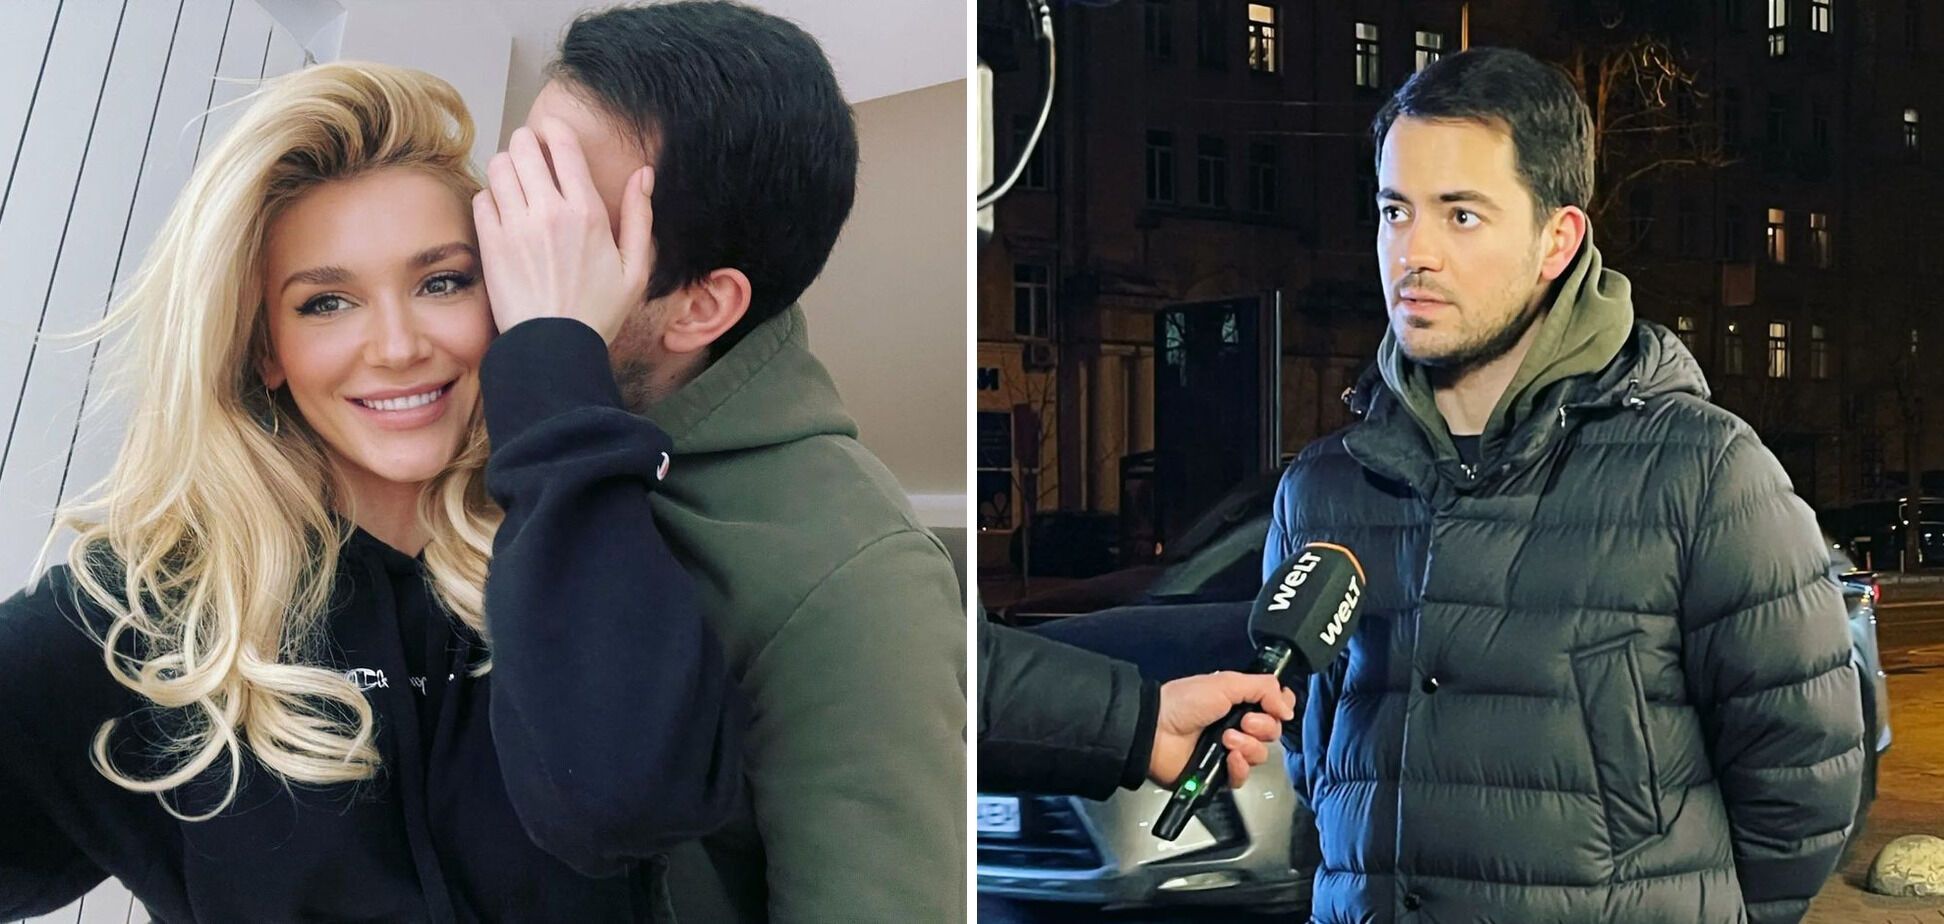 СМИ выяснили, с кем встречается Миша Романова: тайным избранником может быть сын известного кинопродюсера